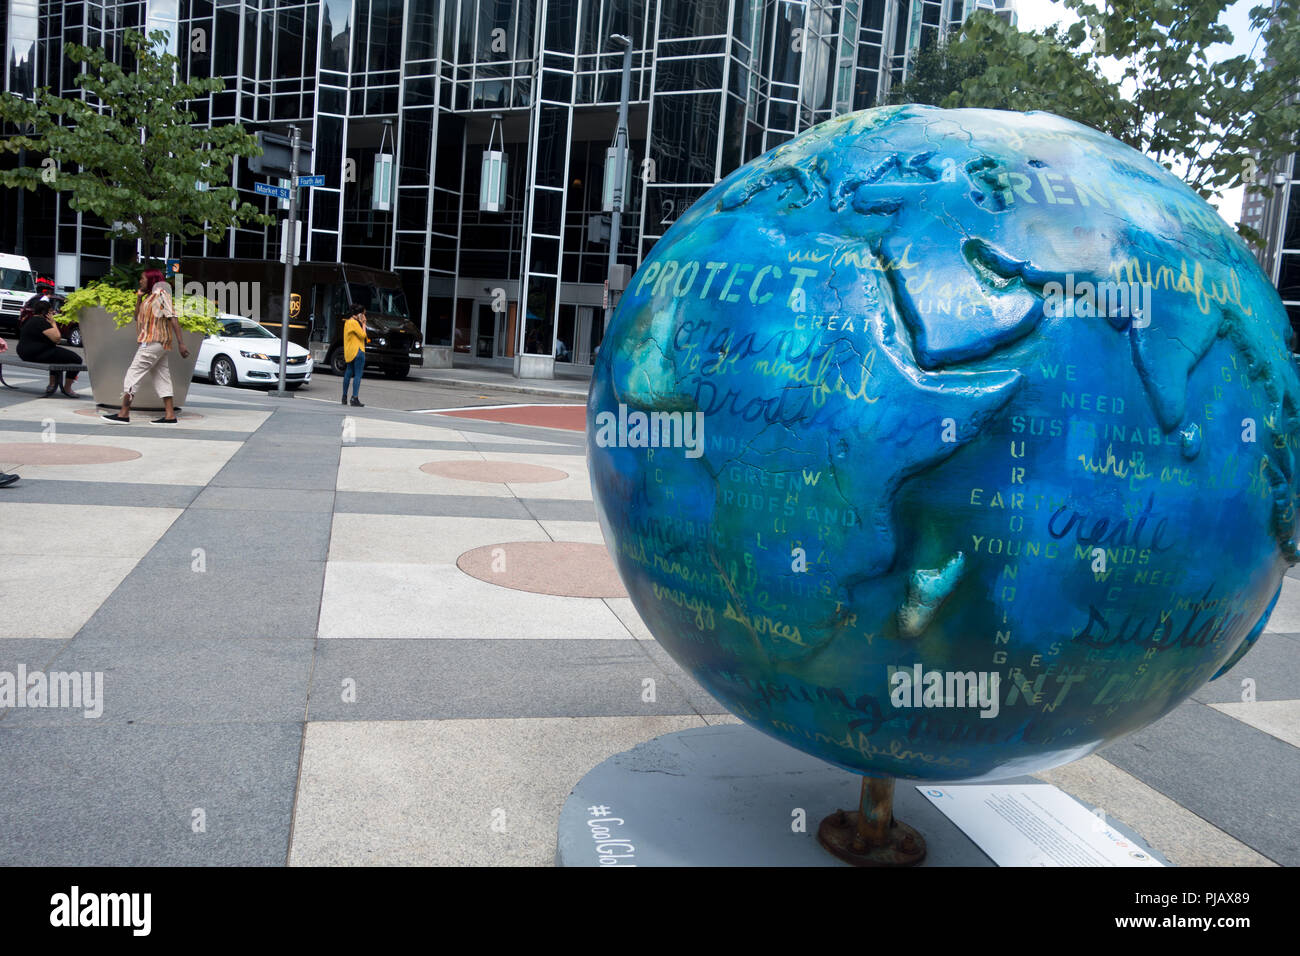 Exposition d'art public, "Cool Globes : Hot Ideas pour une planète" à Pittsburgh les globes colorés pour promouvoir des solutions pour les changements climatiques Banque D'Images